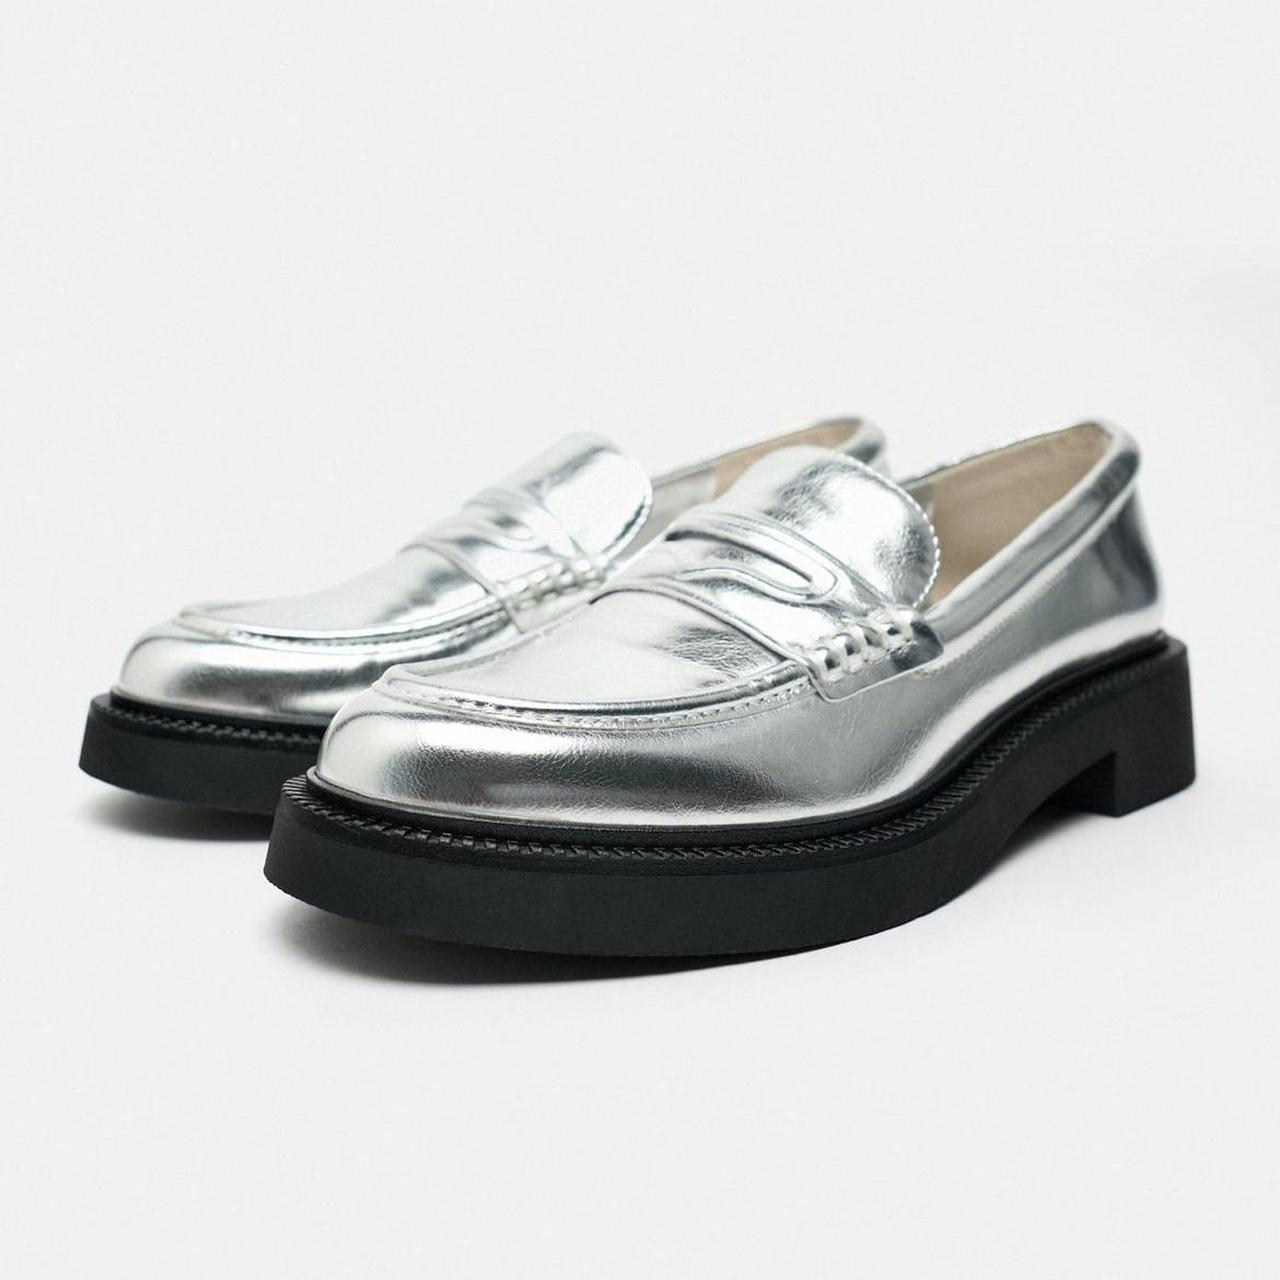 Zara silver loafers in women’s size 7.5 (eur 38). NWOT. - Depop